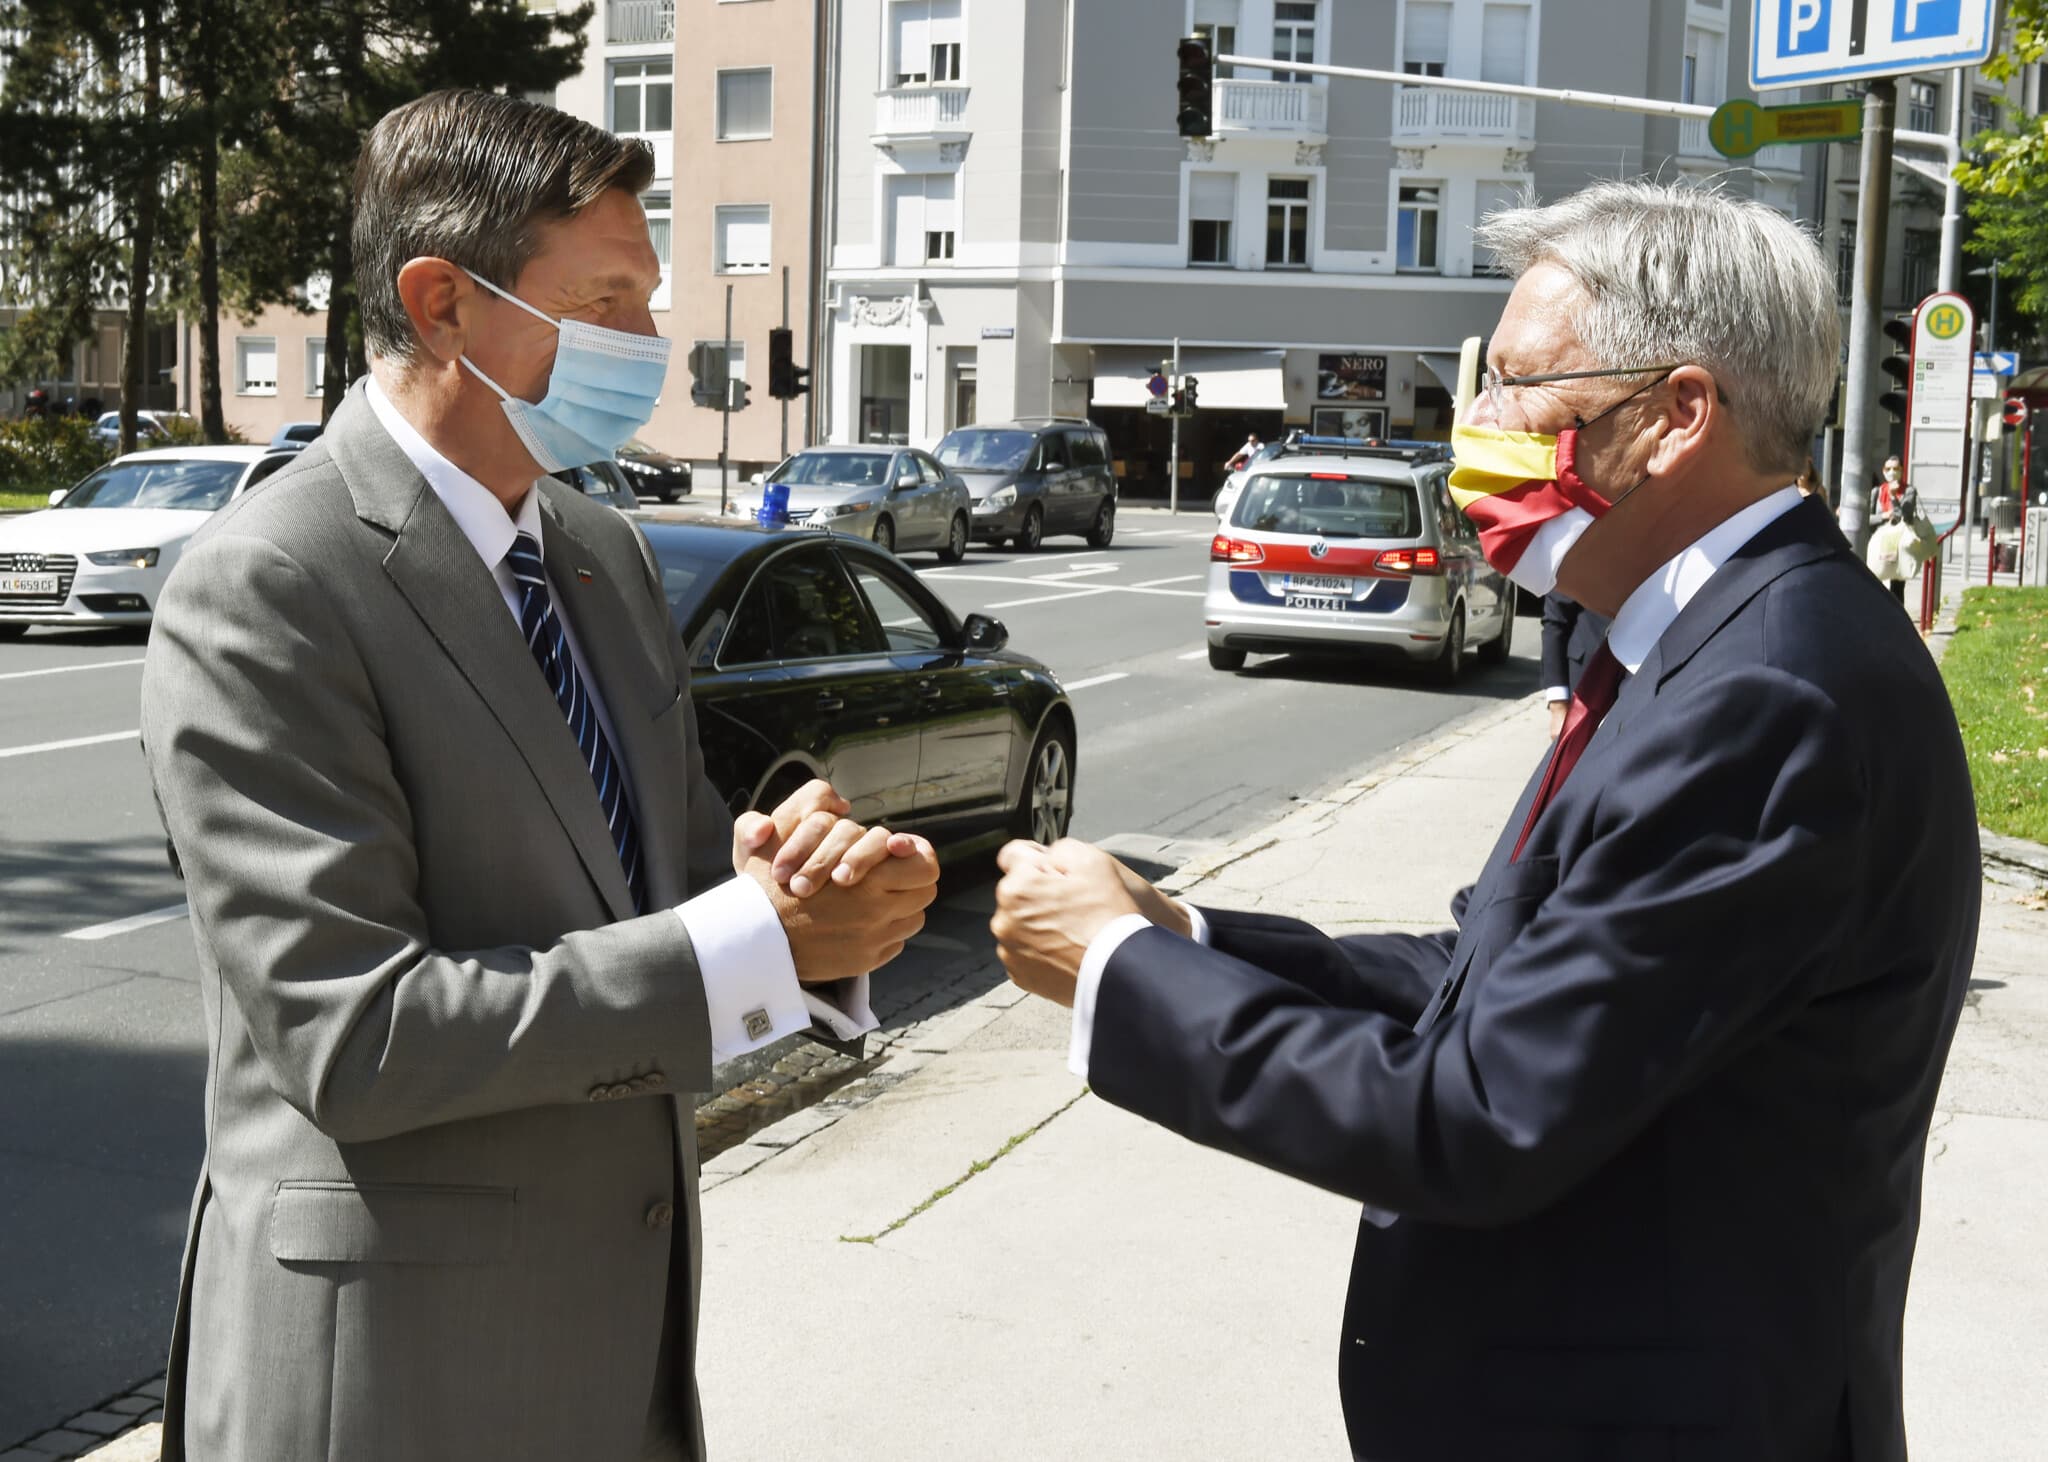 Empfang des Slowenischen Staatsprsidenten Borut Pahor durch LH Dr. Peter Kaiser
©fritzpress